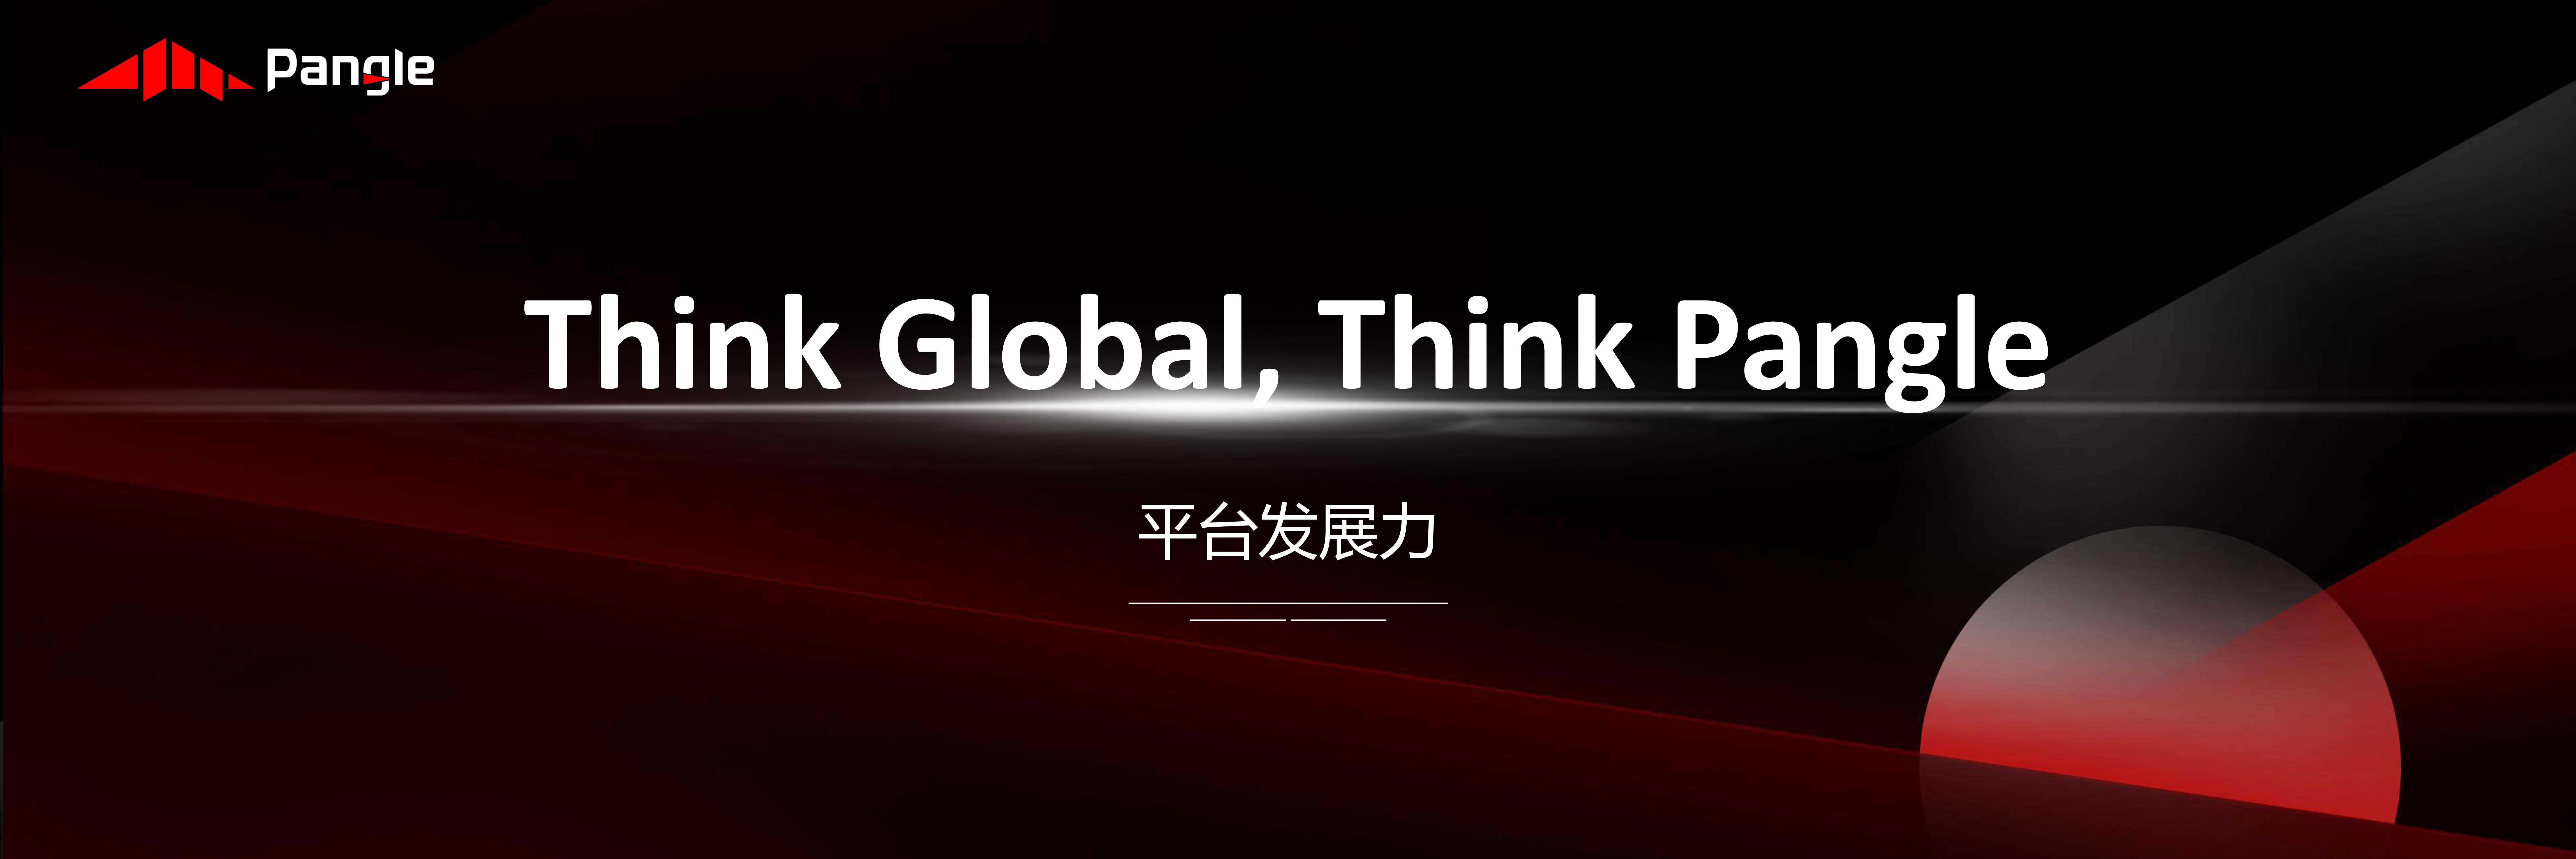 钟乐-Think Global, Think Pangle-2021.07-22页